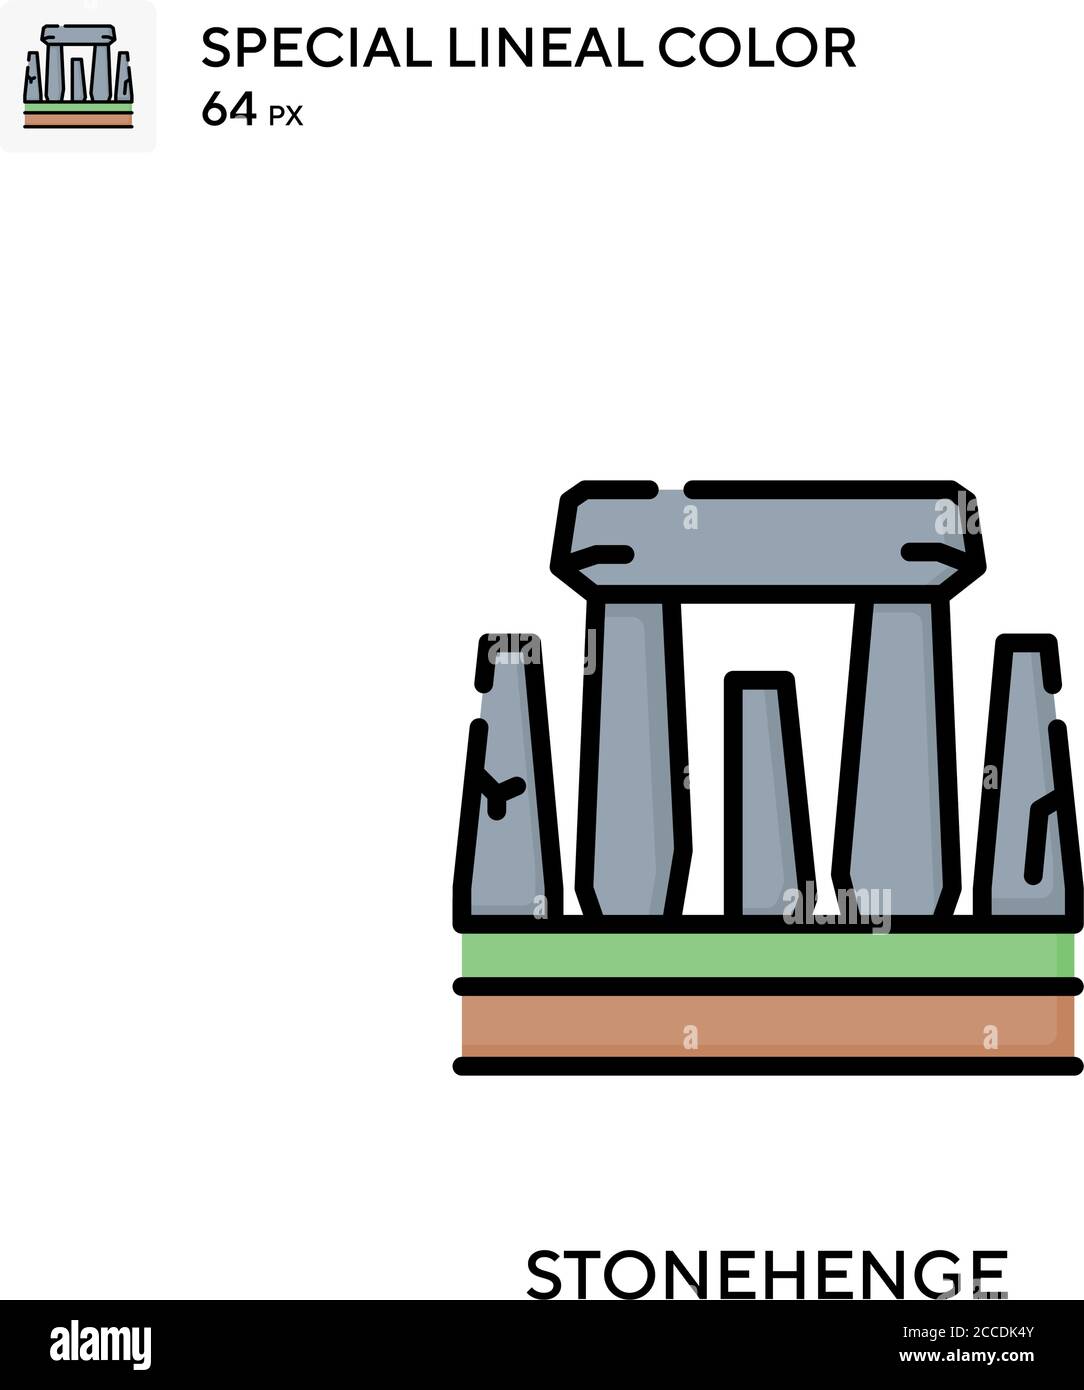 Stonehenge icono de color lineal especial. Plantilla de diseño de símbolos de ilustración para elemento de interfaz de usuario móvil web. Pictograma moderno de color perfecto en trazo editable Ilustración del Vector